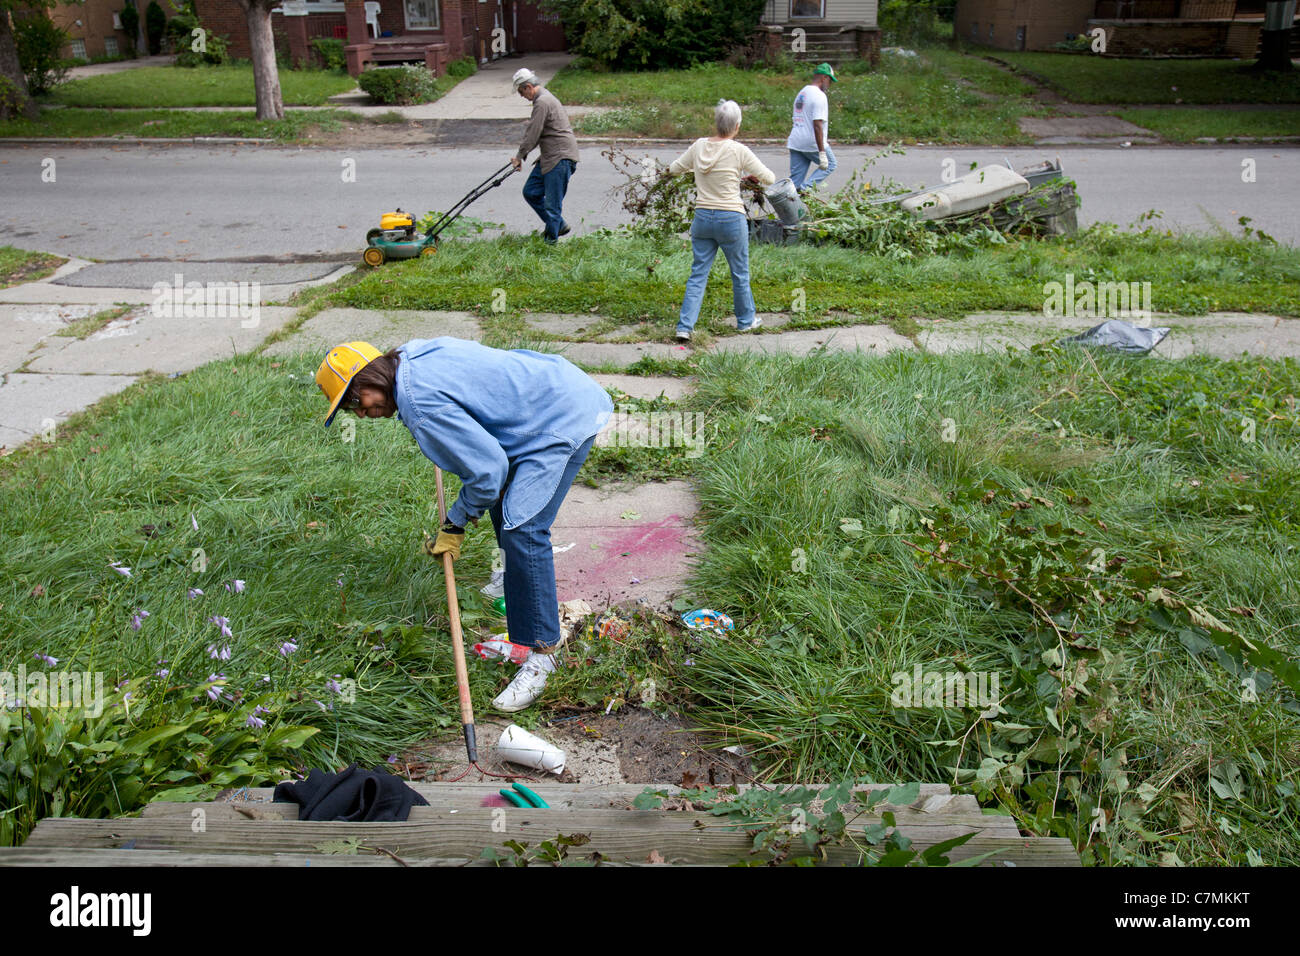 Detroit, Michigan - membres des trois Mile Drive club bloc nettoyer la corbeille et les mauvaises herbes d'une maison vacante dans leur quartier. Banque D'Images